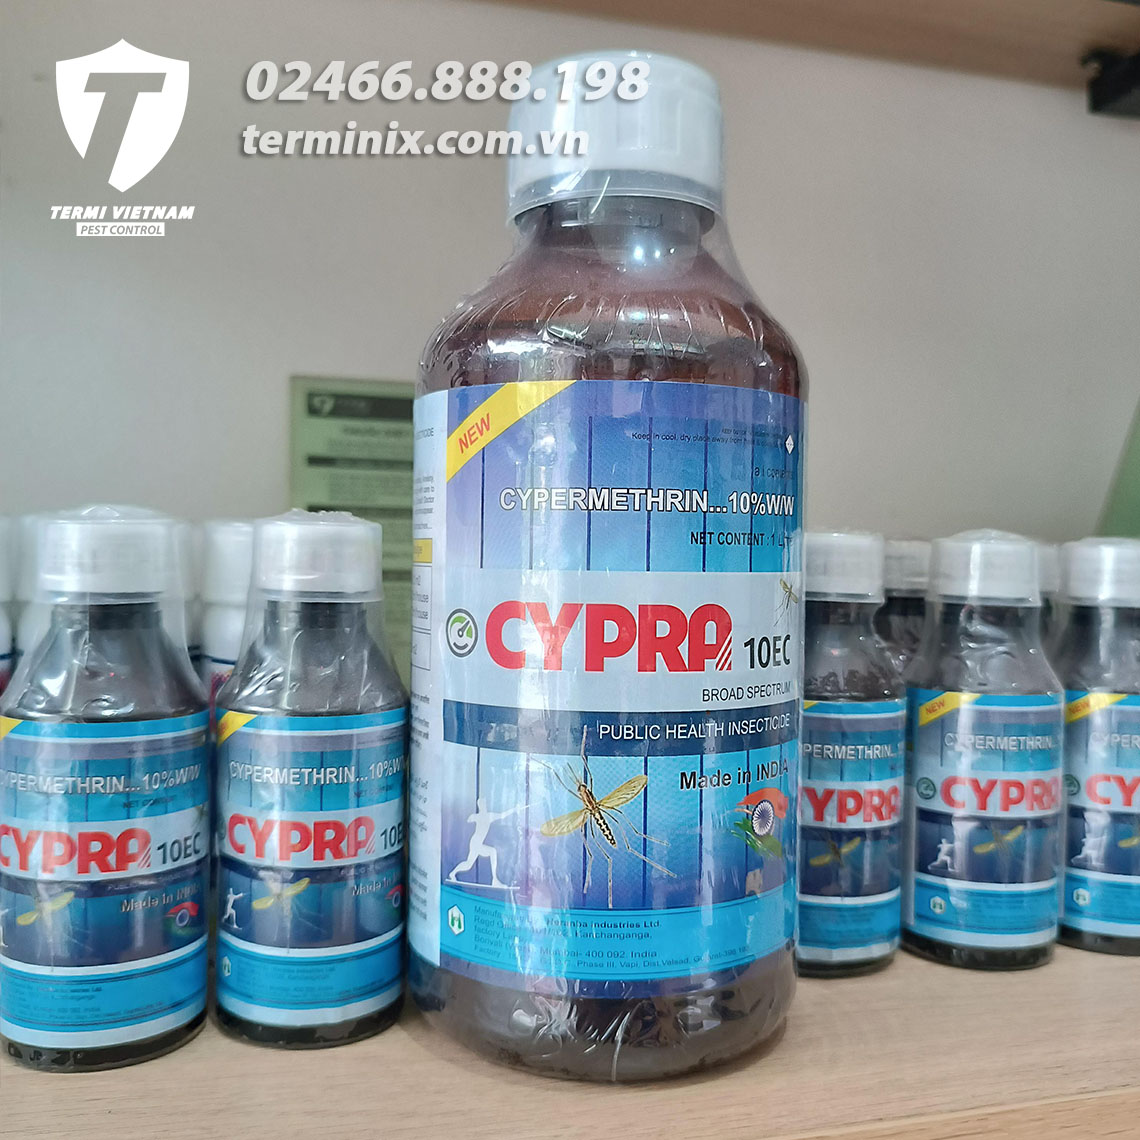 Thuốc phòng trừ muỗi Cypra 10EC chai 1 lít nhập khẩu Ấn Độ